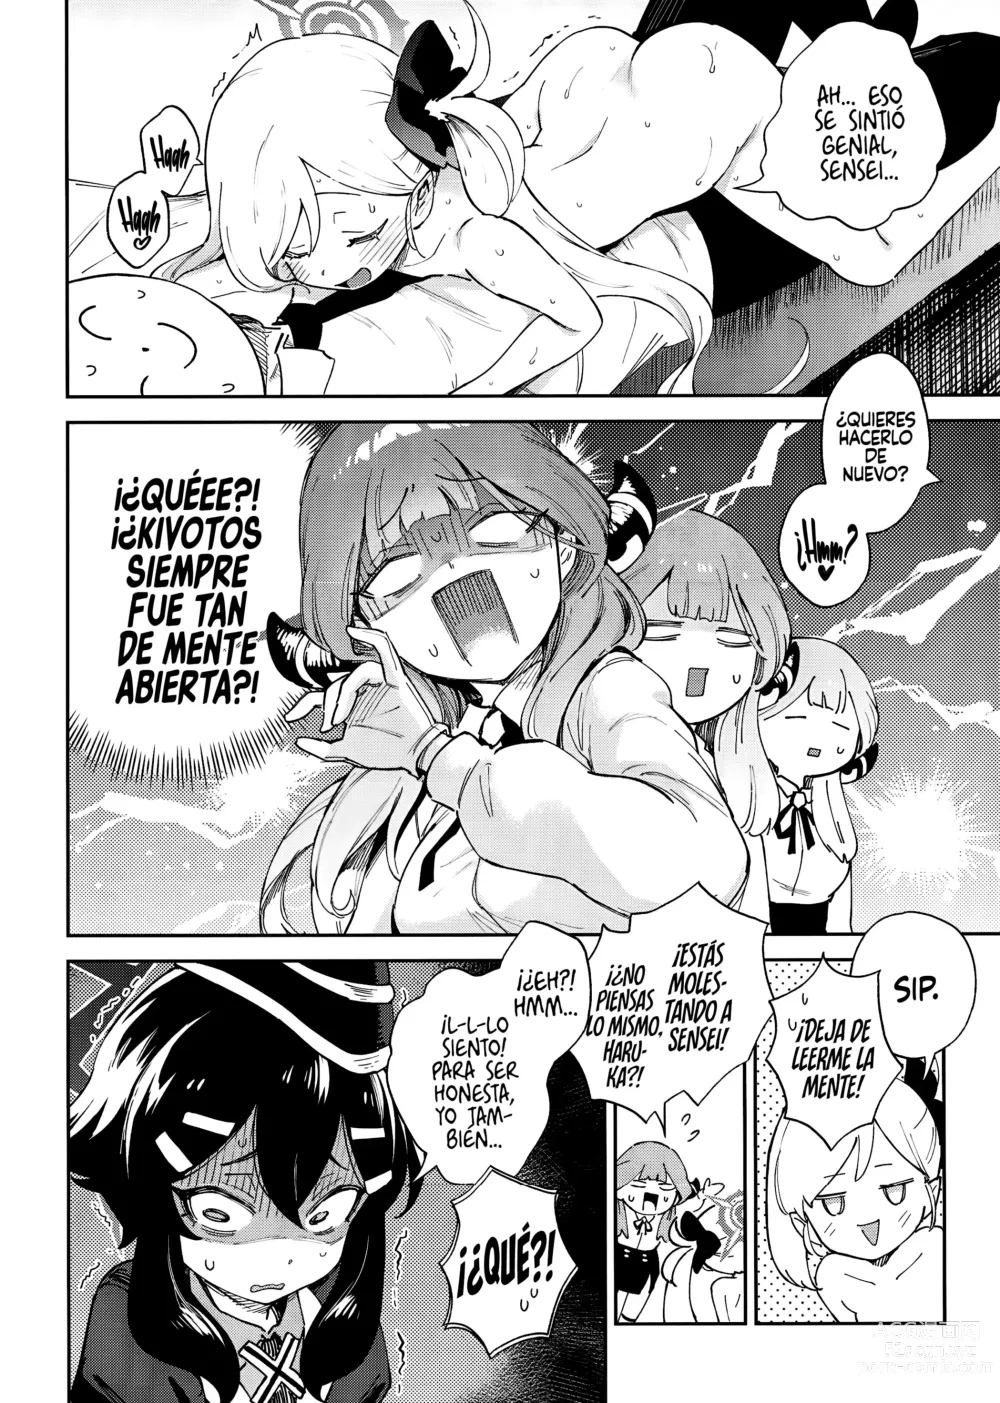 Page 6 of doujinshi Sensei to Seito no Kankei tte Konna ni mo Open nanoo!?